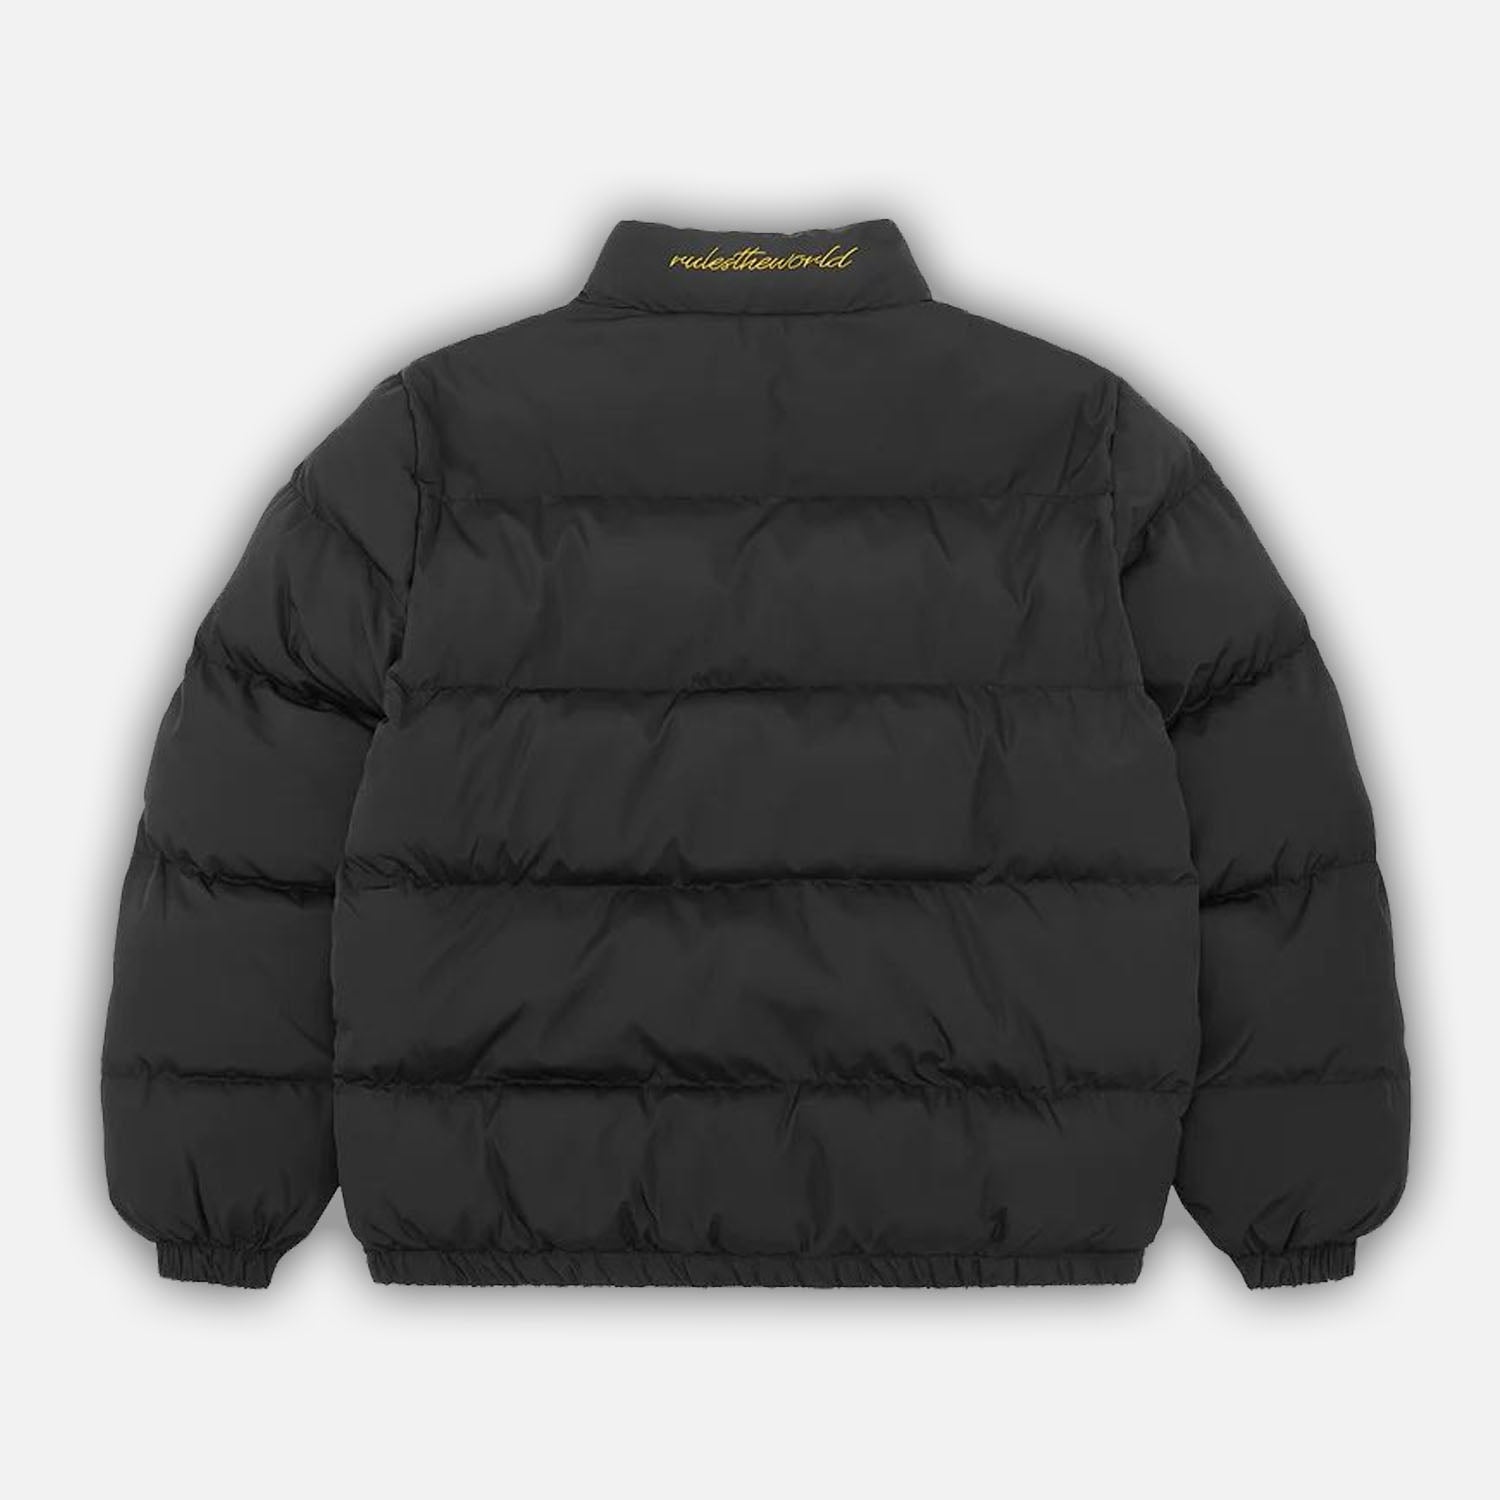 Corteiz RTW OG Bolo Puffer Jacket - Black / Yellow